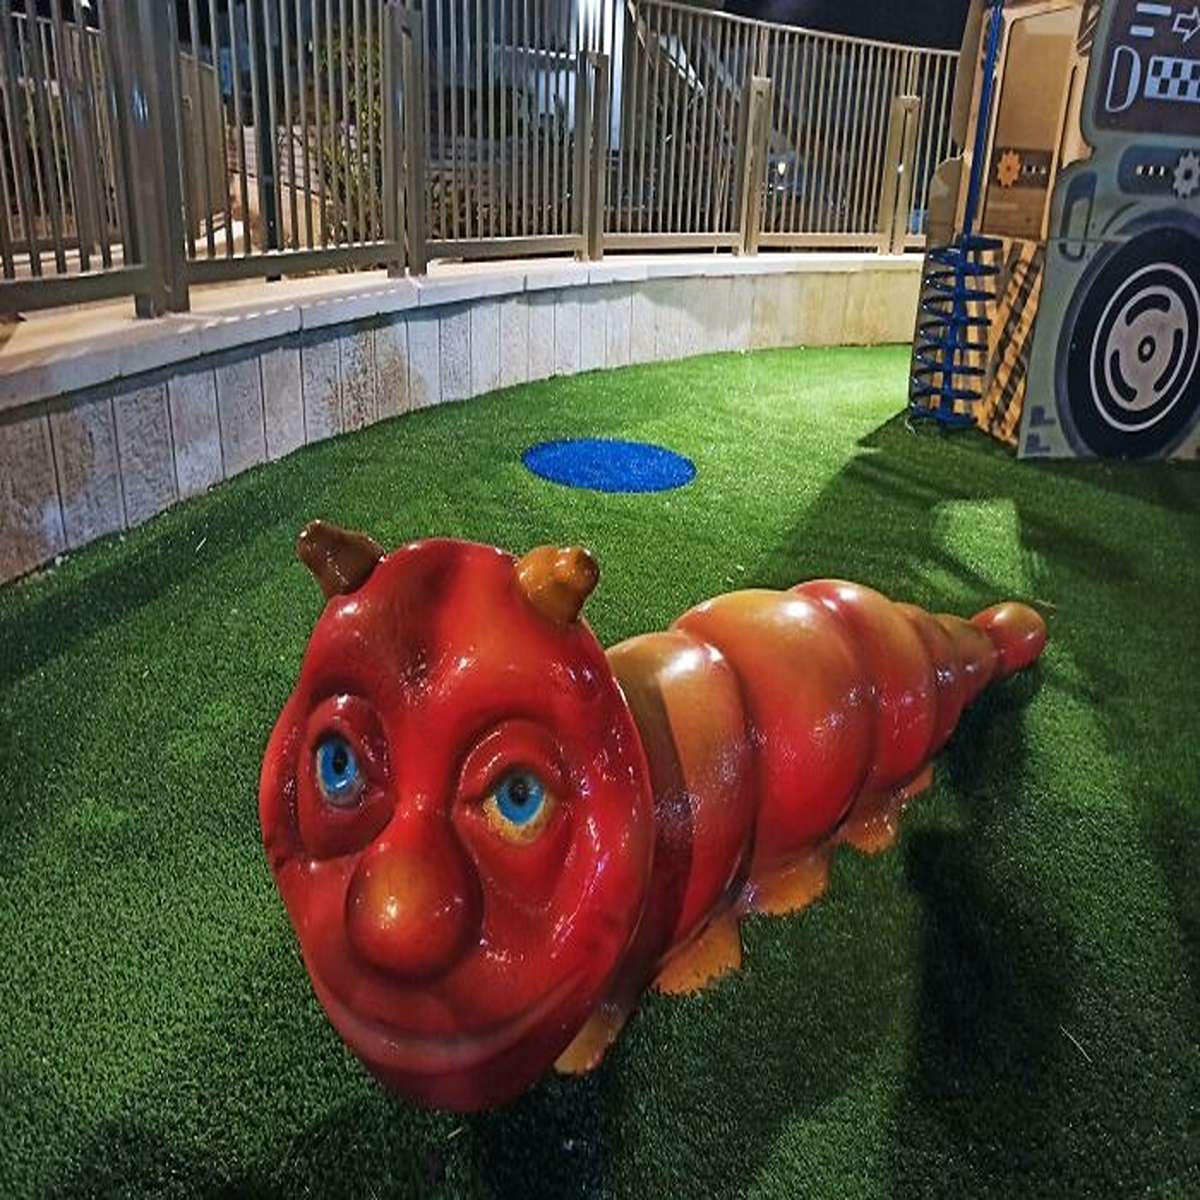 This Horrific Playground Caterpillar